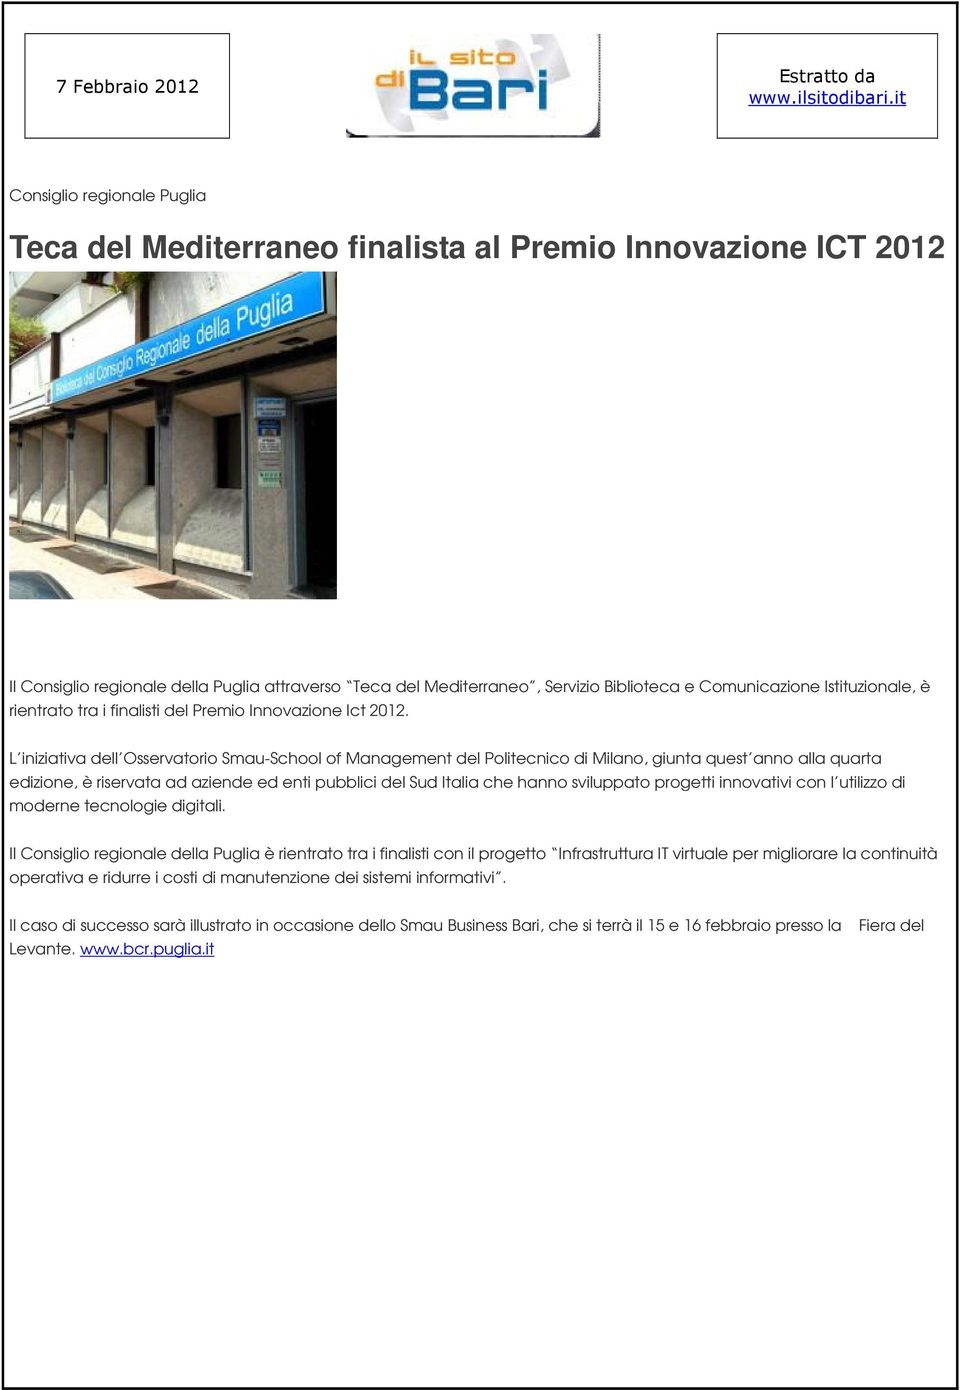 Istituzionale, è rientrato tra i finalisti del Premio Innovazione Ict 2012.